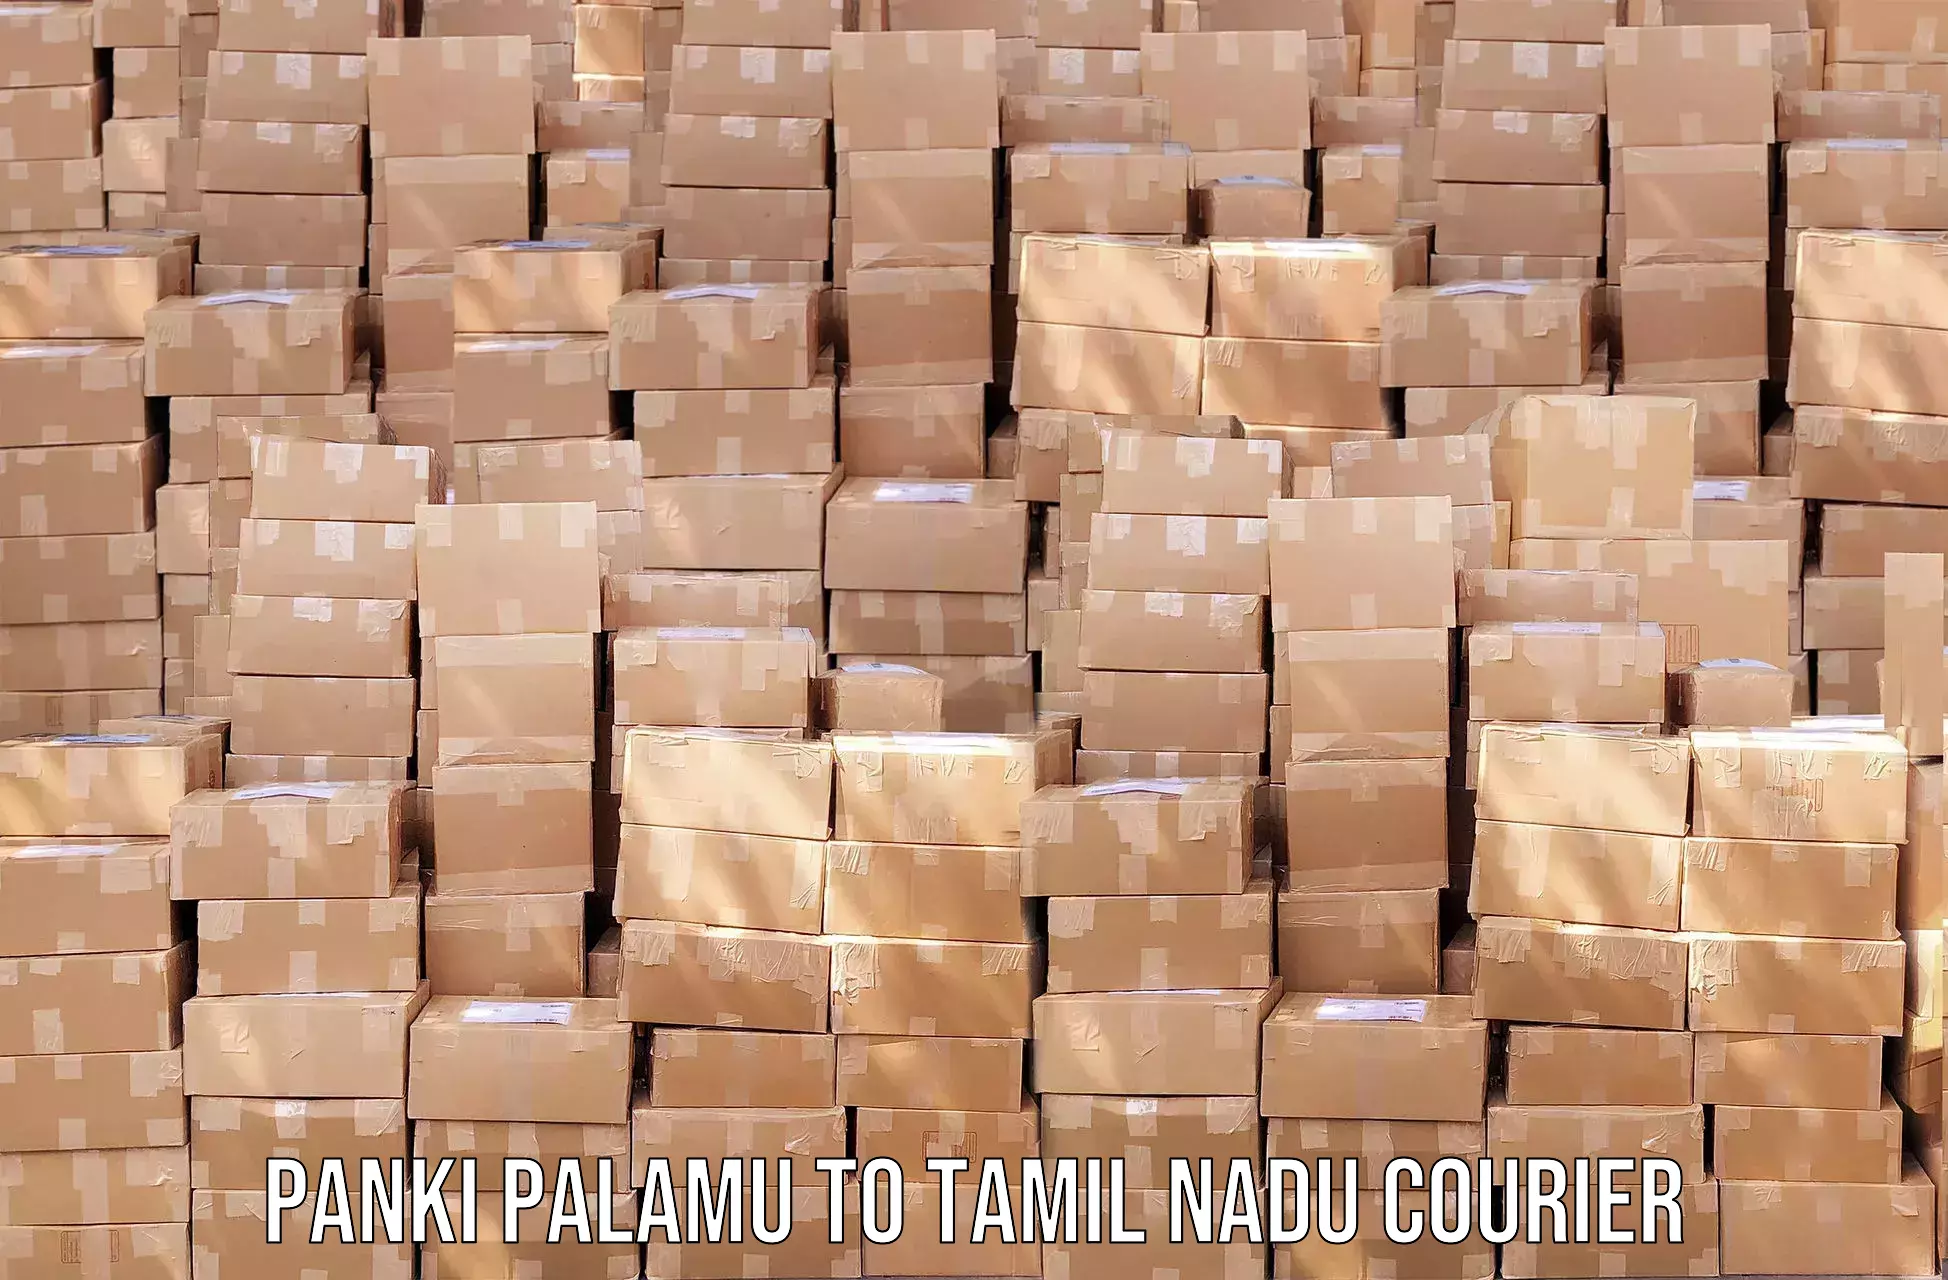 Global logistics network Panki Palamu to Thoothukudi